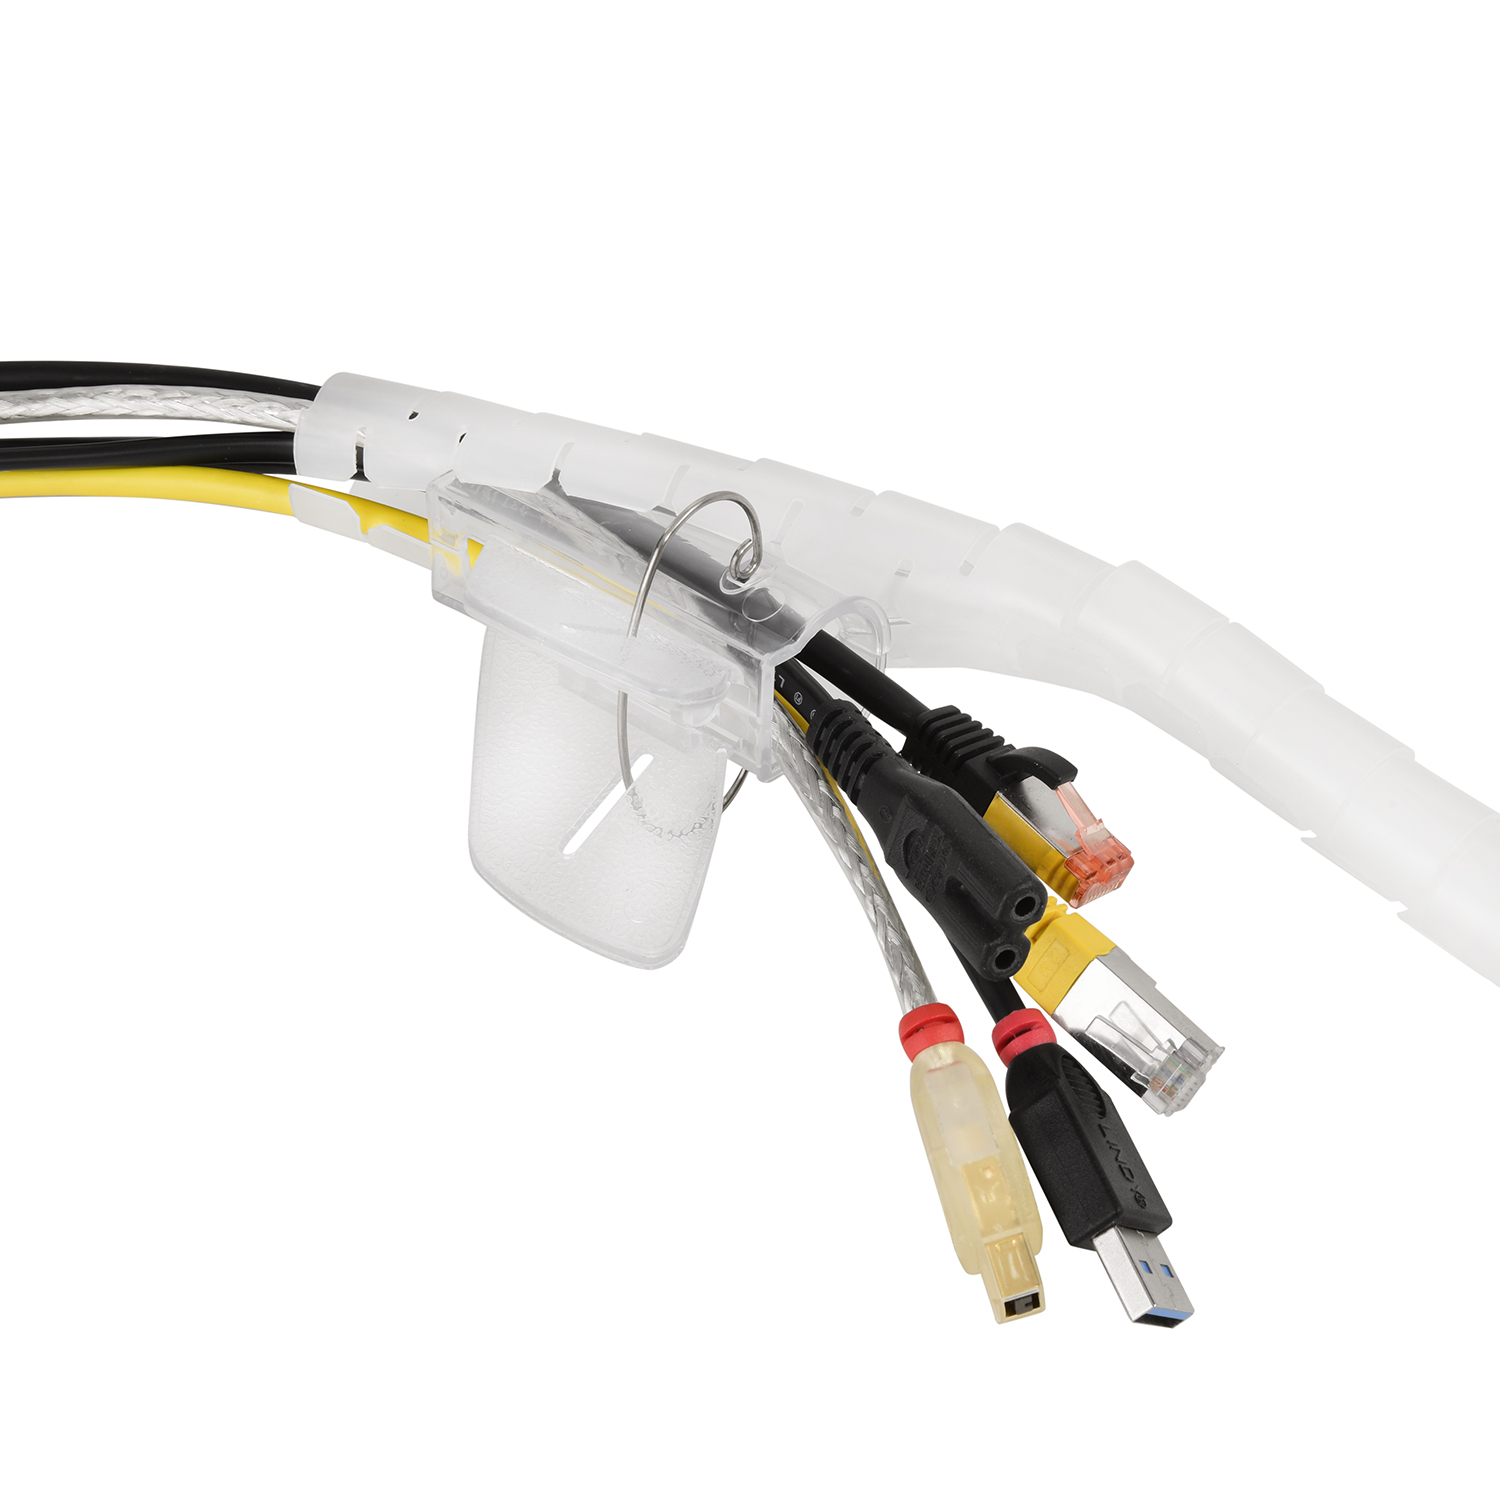 Einfädelhilfe, Premium TPFNET Kabelschlauch, mit 30mm, Transparent Spiral-Kabelschlauch Transparent, 2,5m